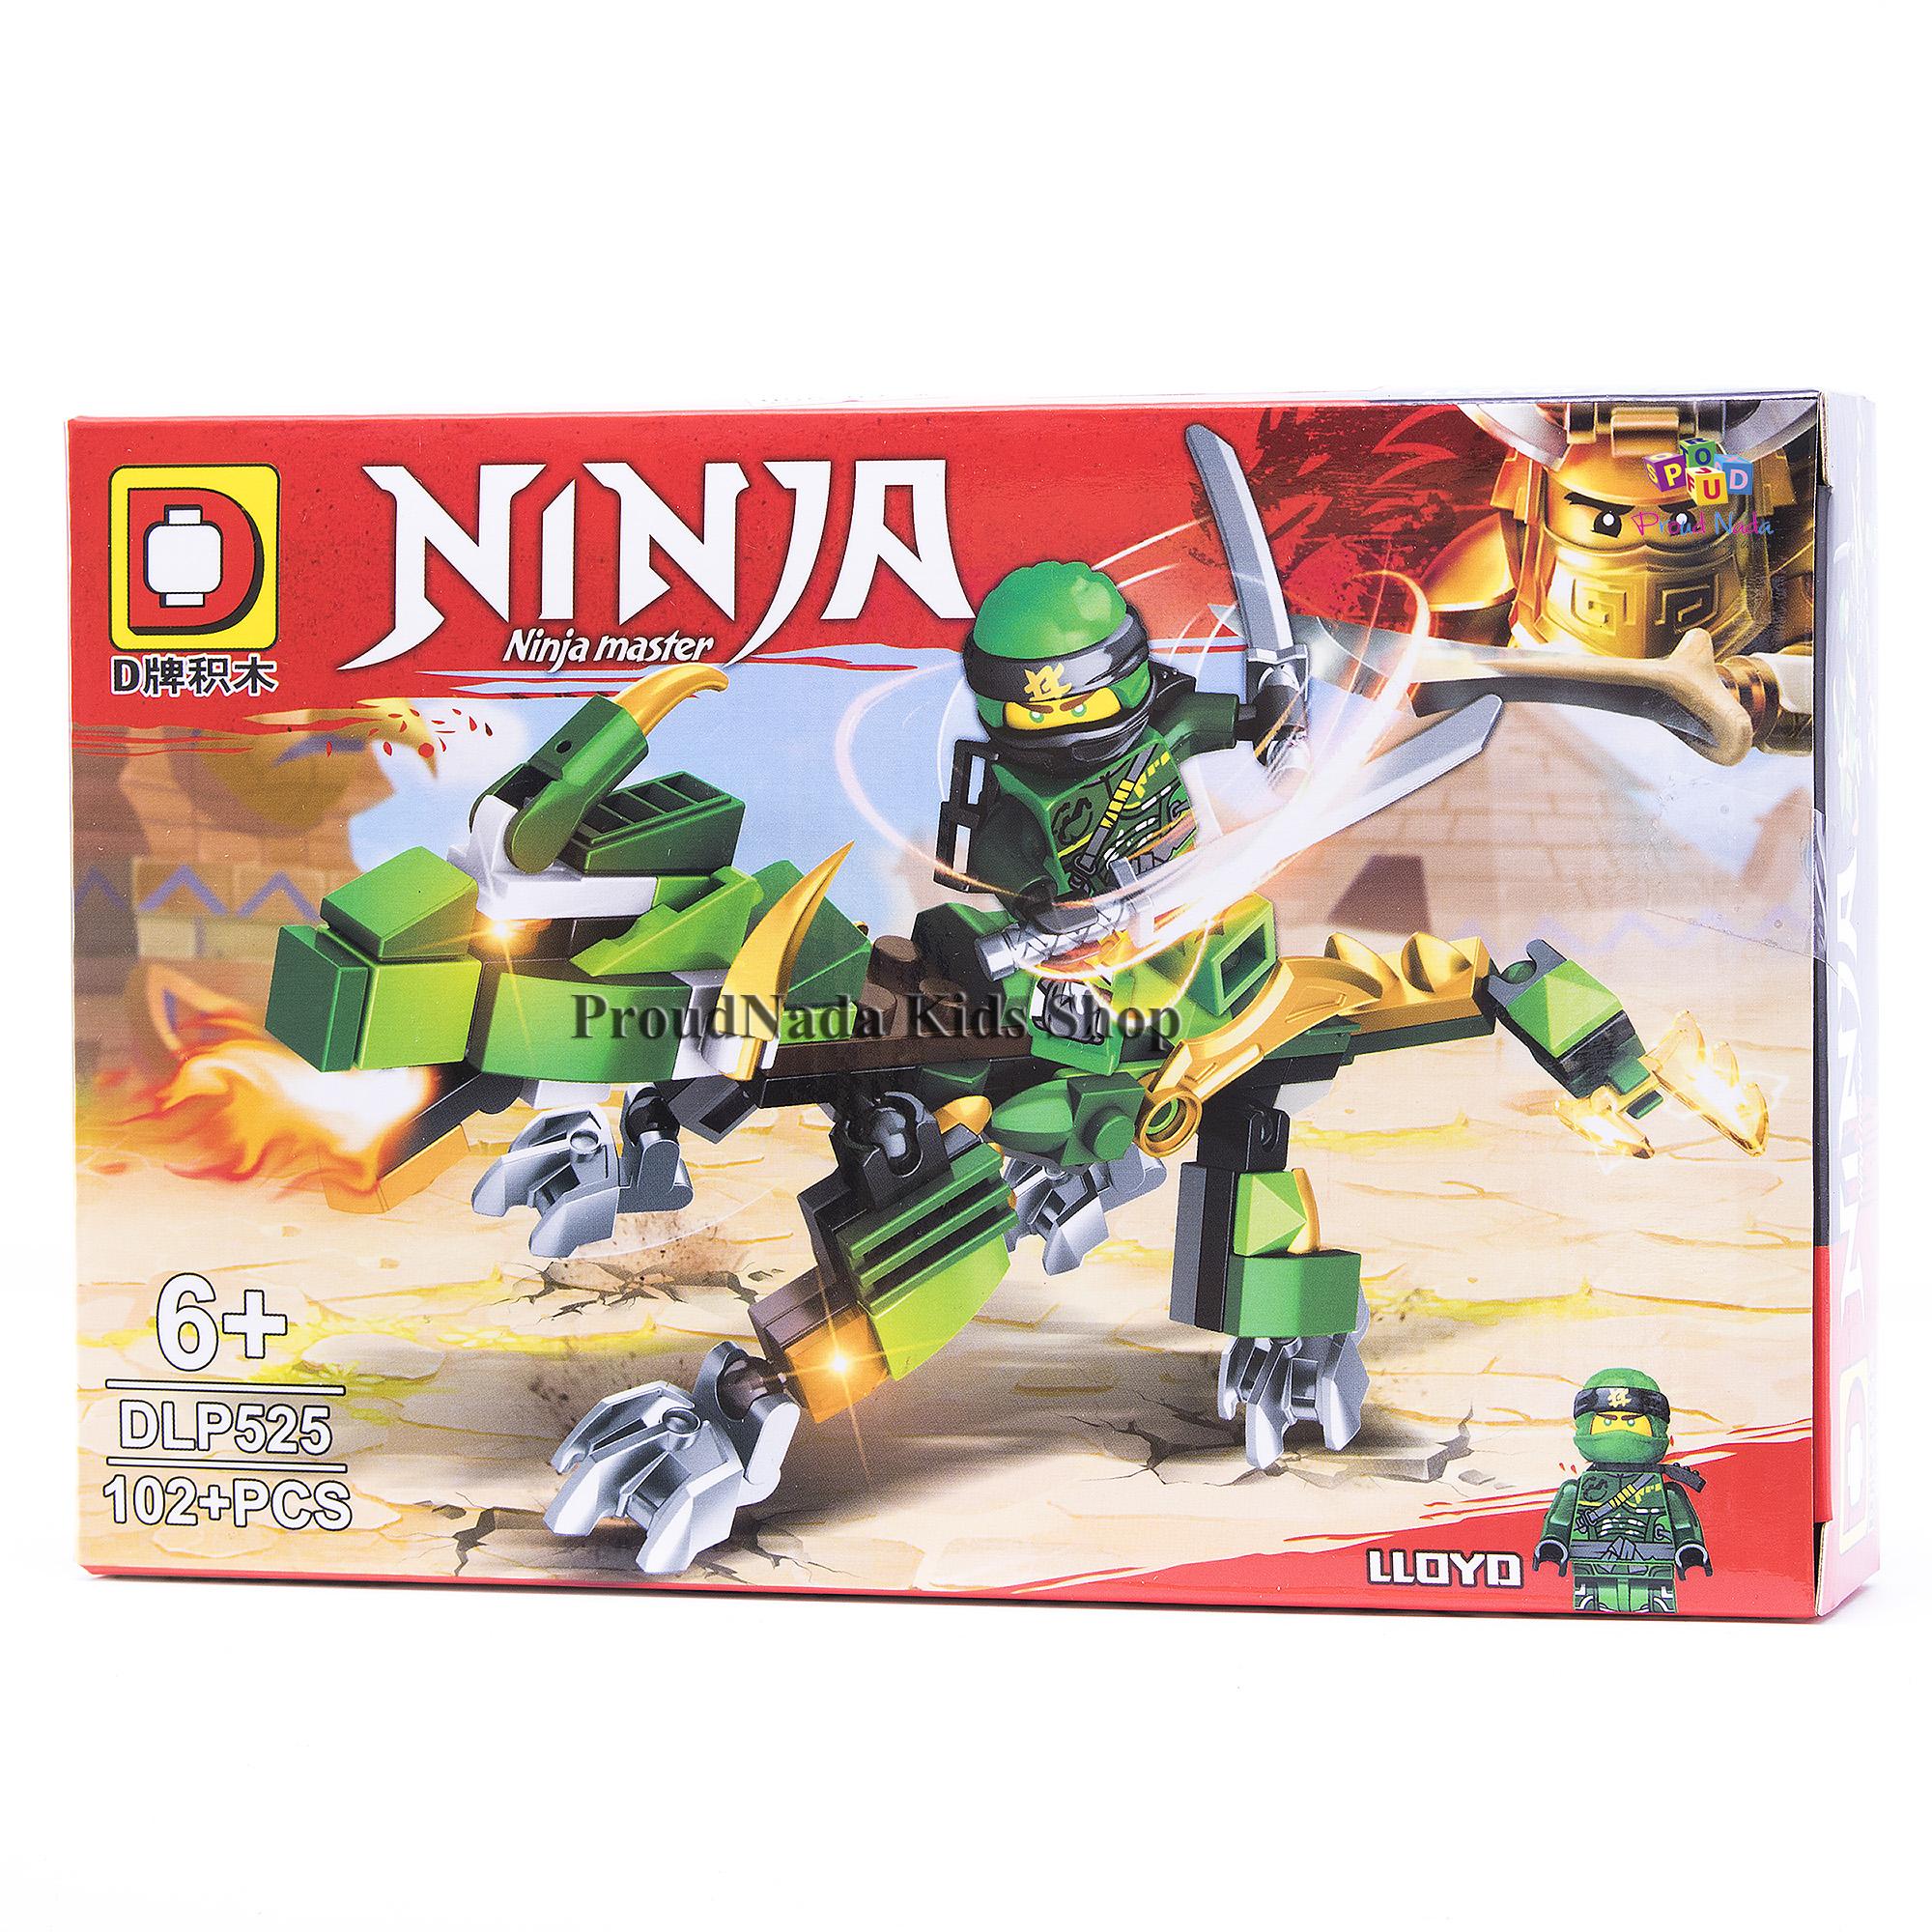 ProudNada Toys ของเล่นเด็กชุดตัวต่อเลโก้นินจามังกร DLP NINJA master DLP525 สี เขียว